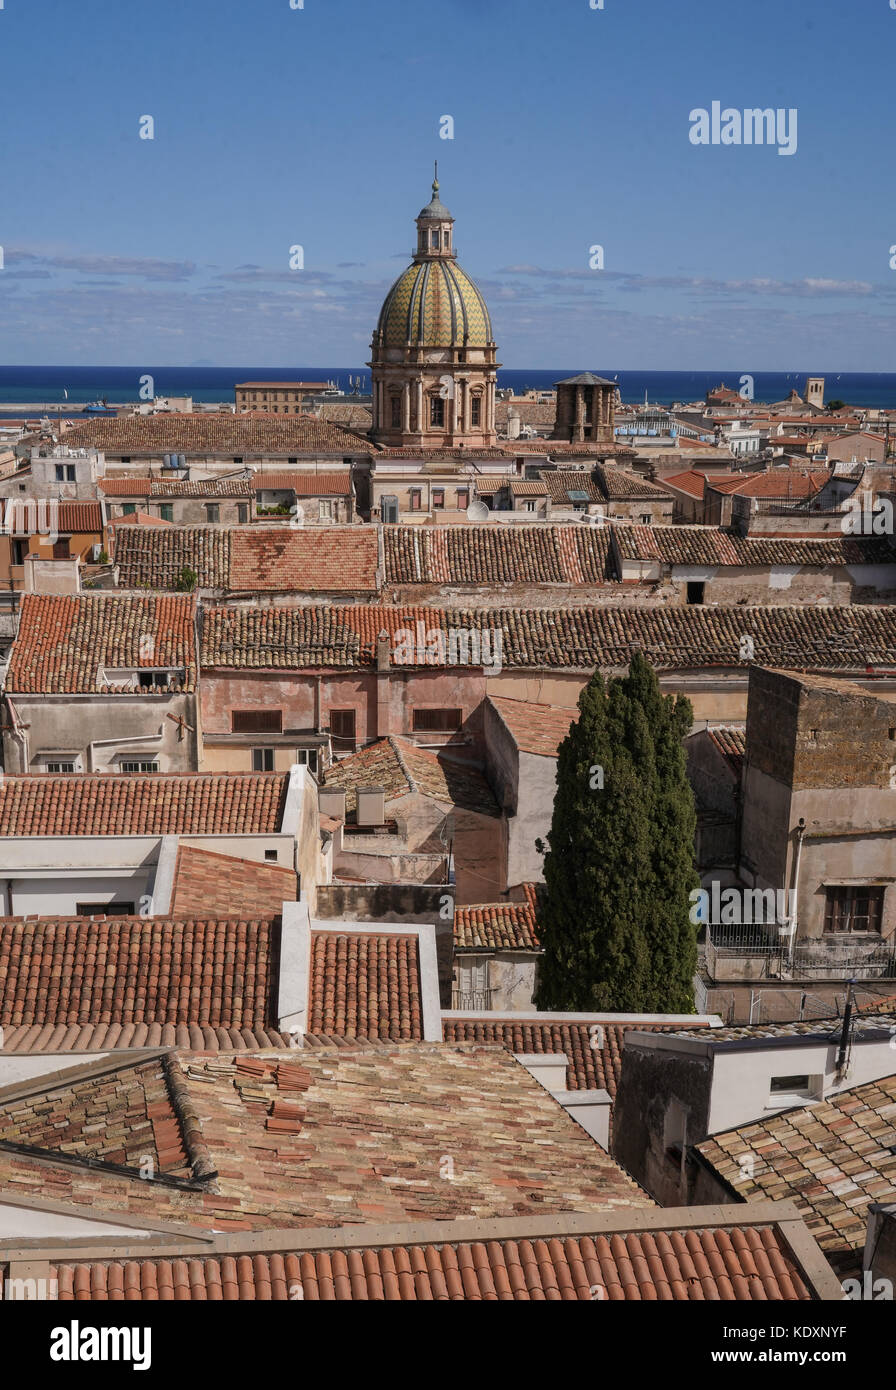 Ein Blick über die Dächer von Palermo Altstadt. Aus einer Serie von Fotos in Sizilien, Italien. foto Datum: Sonntag, 8. Oktober 2017. Photo credit Shou Stockfoto